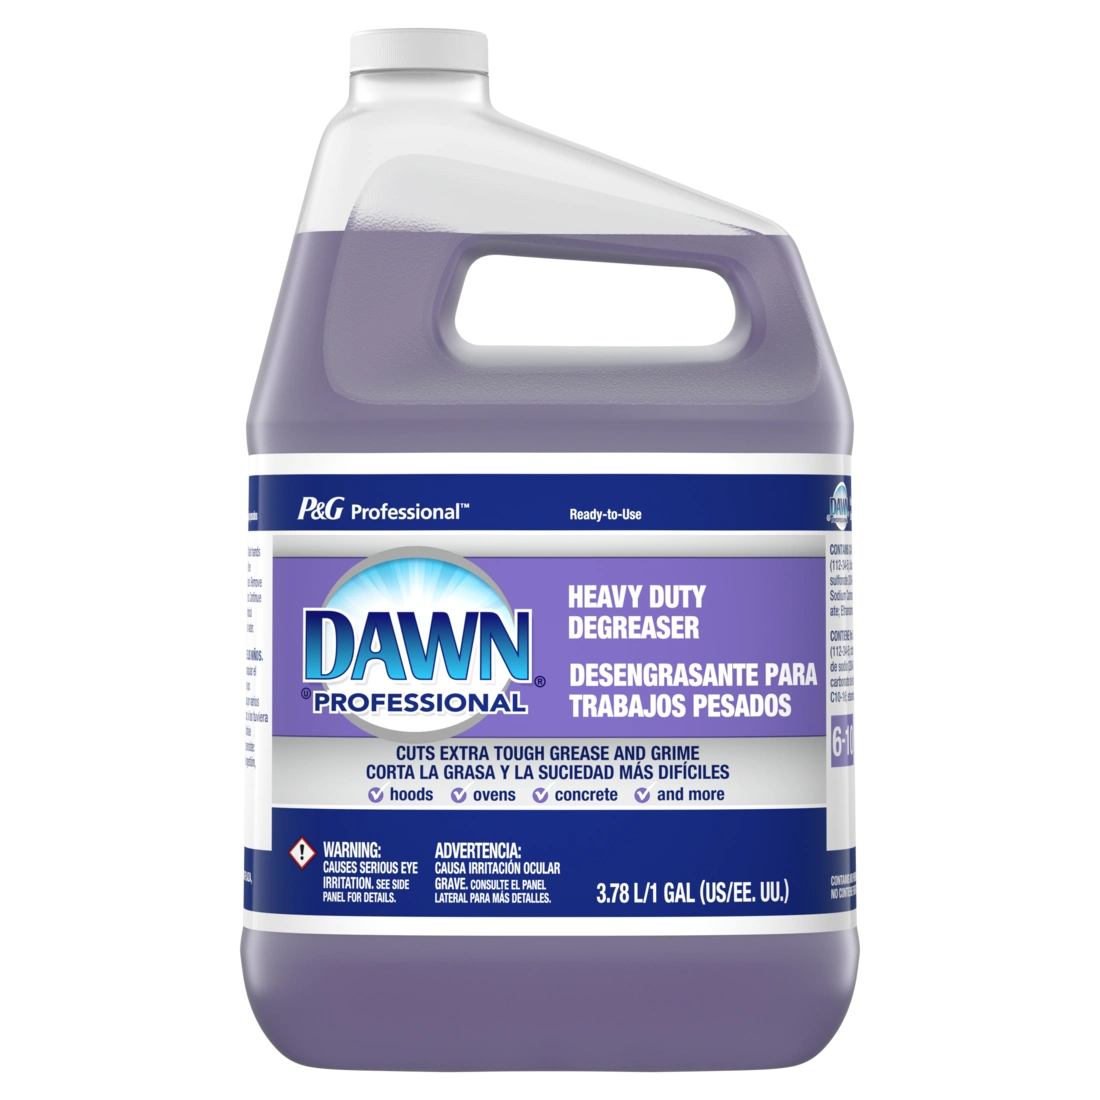 Dawn® Professional Heavy Duty Degreaser